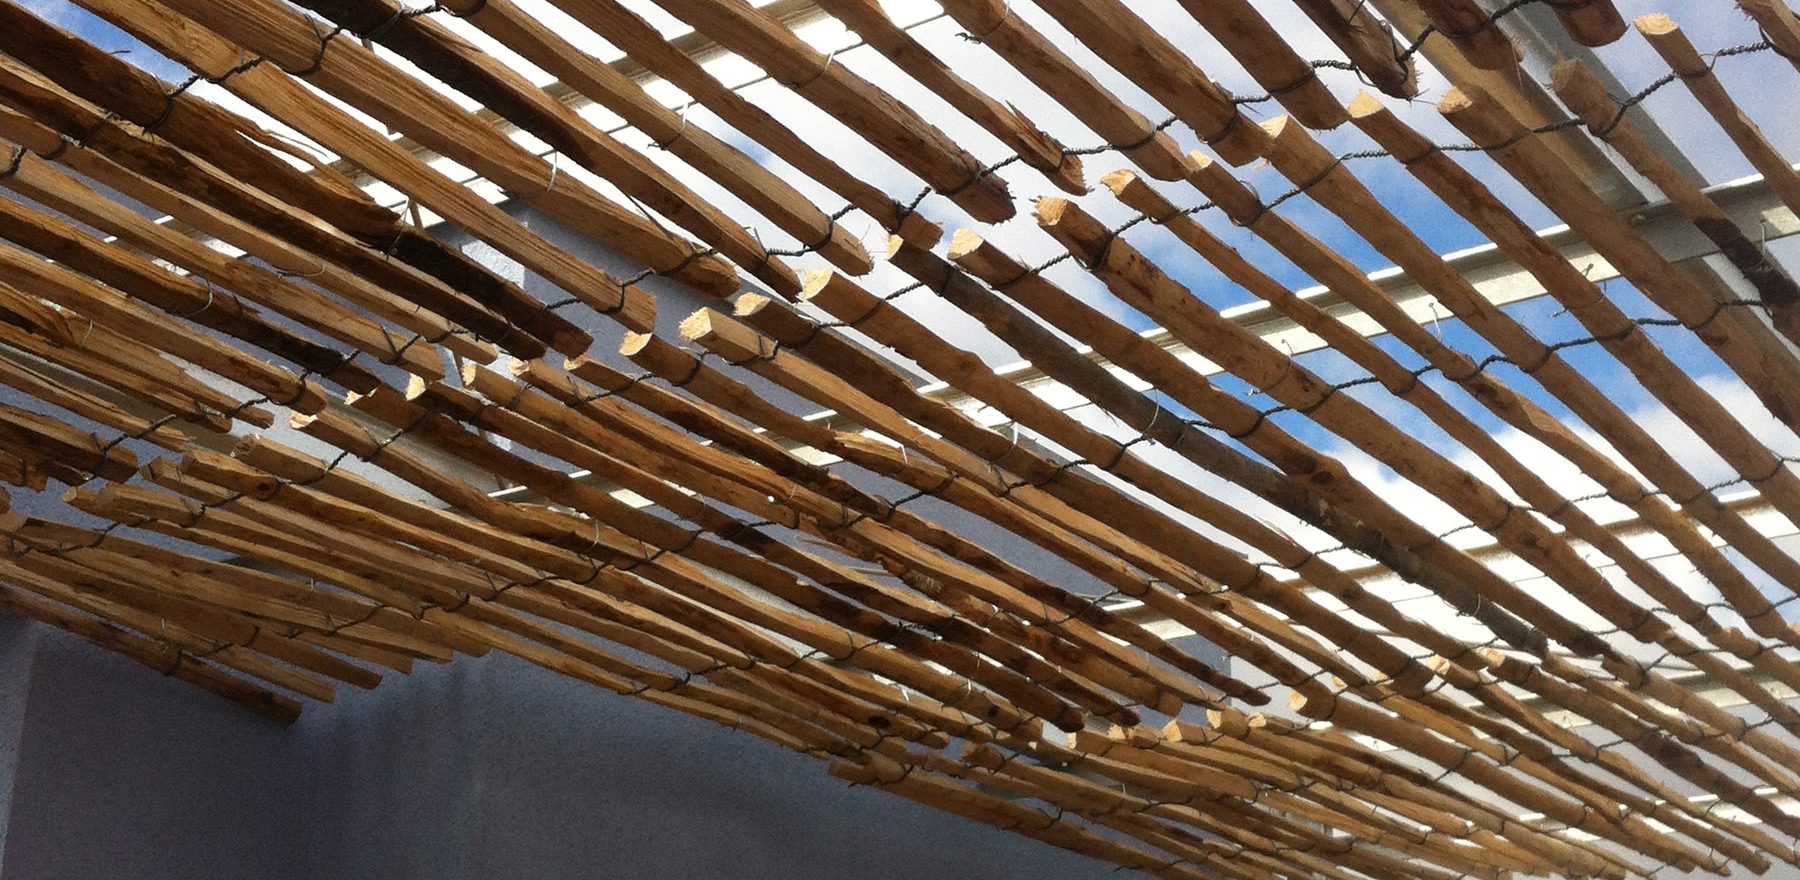 Blick von unten auf Holzdach aus locker gebundenen naturnahem, gespaltetem Holz vor blauem Himmel, das Schatten spendet